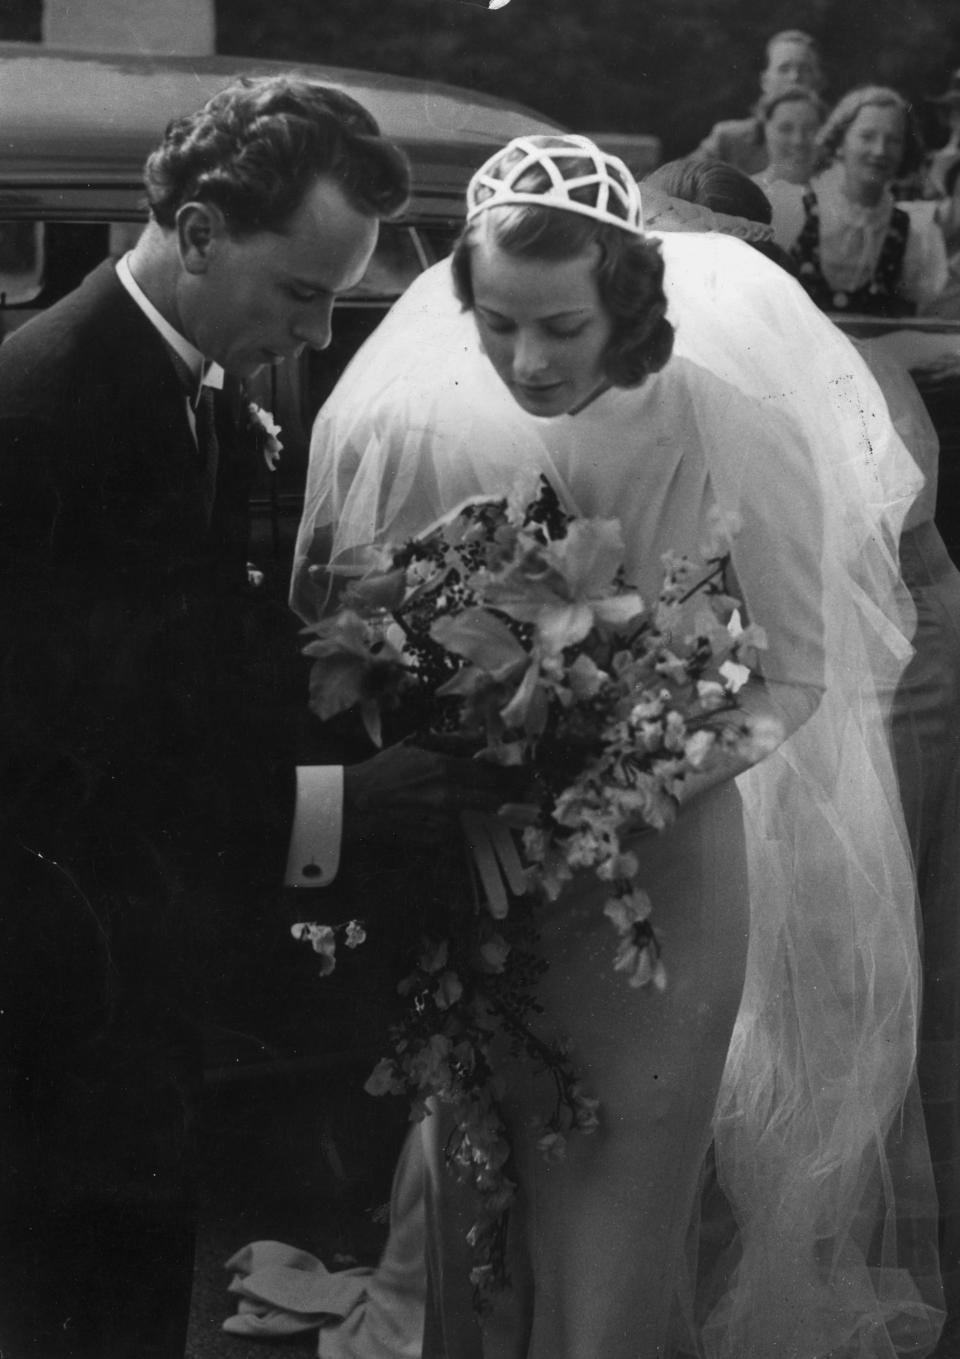 Ingrid Bergman and her husband Dr. Petter Lindstrom hold the bridal bouquet together.